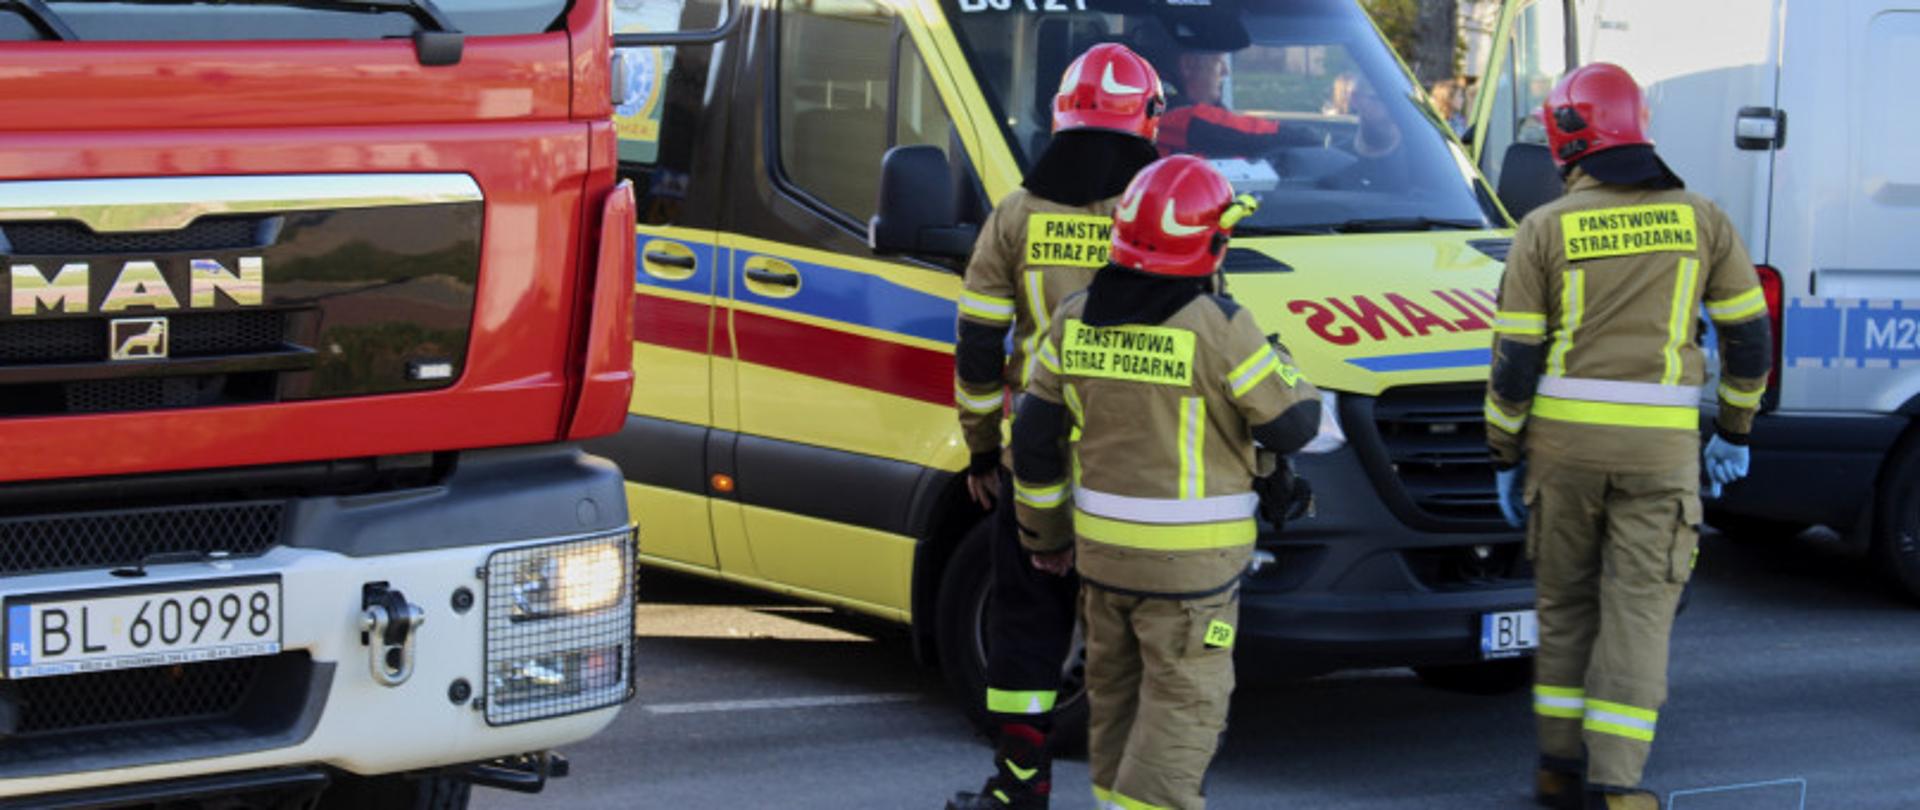 Widocznych jest trzech strażaków ubranych w ubrania specjalne. W tle znajdują się pojazdy uprzywilejowane: pojazd ratowniczo-gaśniczy oraz karetka. 